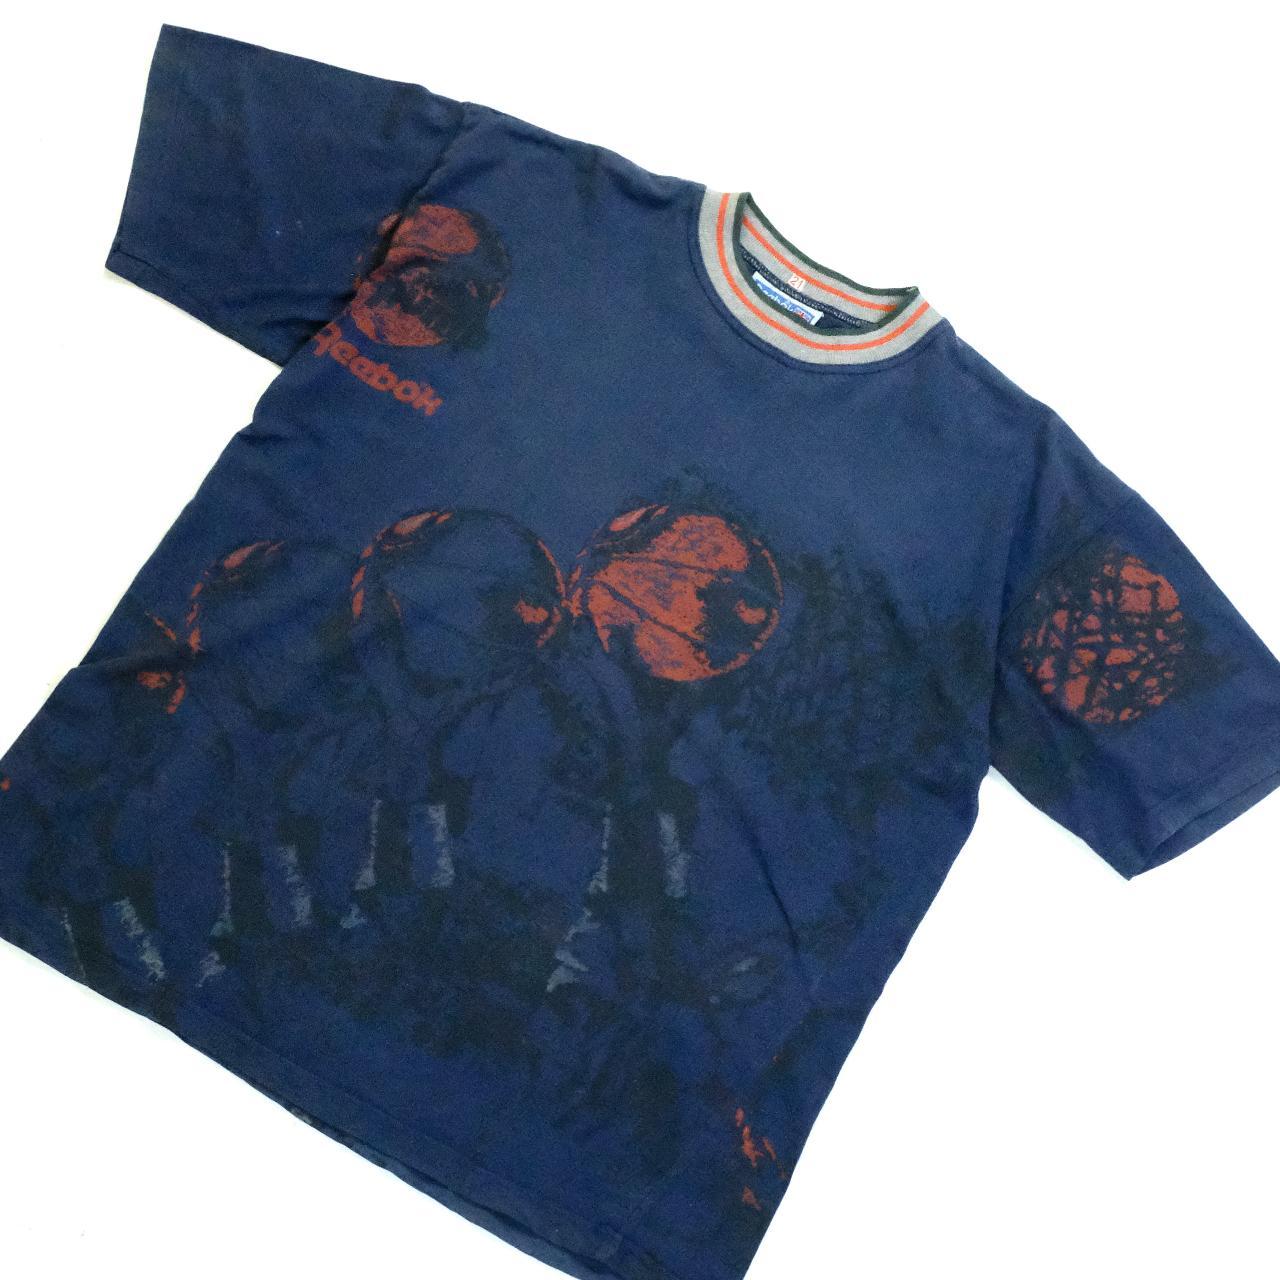 1980s Reebok T-Shirt